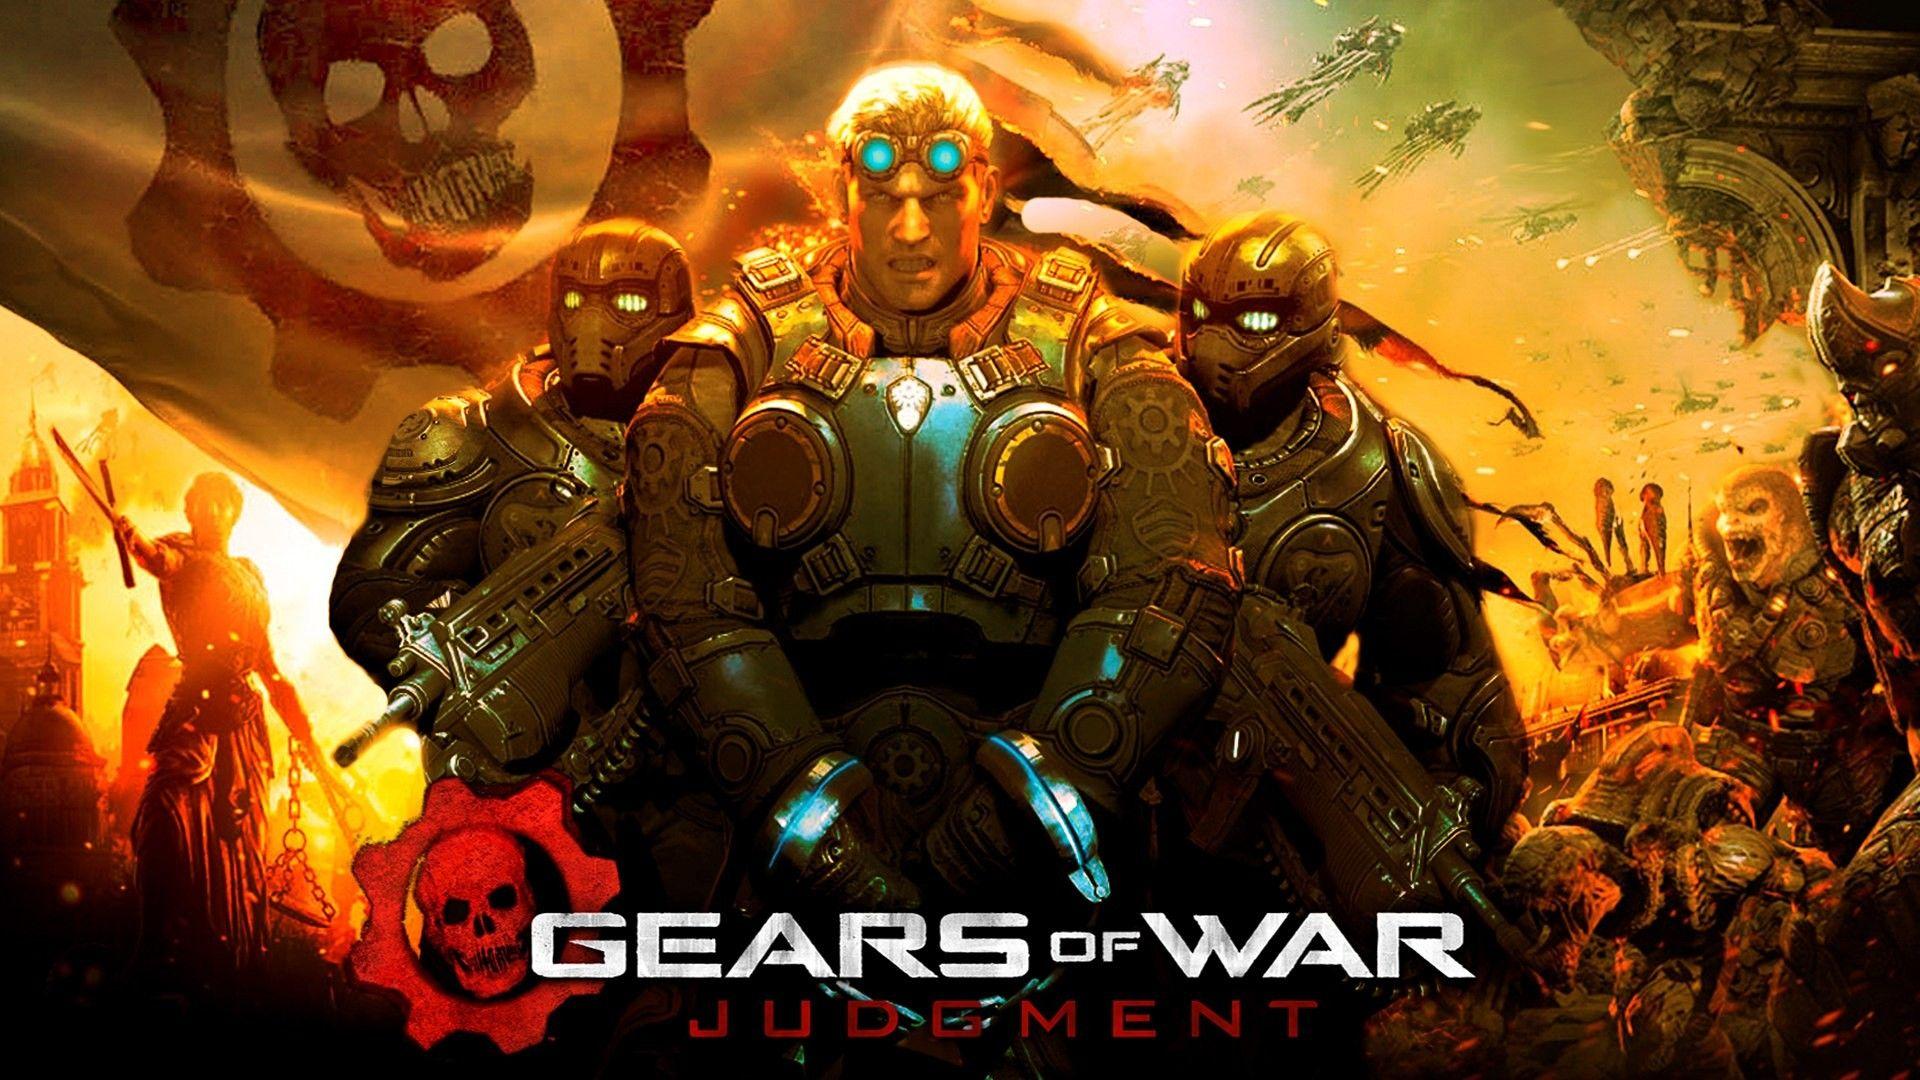 Download the Gears of War Judgement Wallpaper, Gears of War